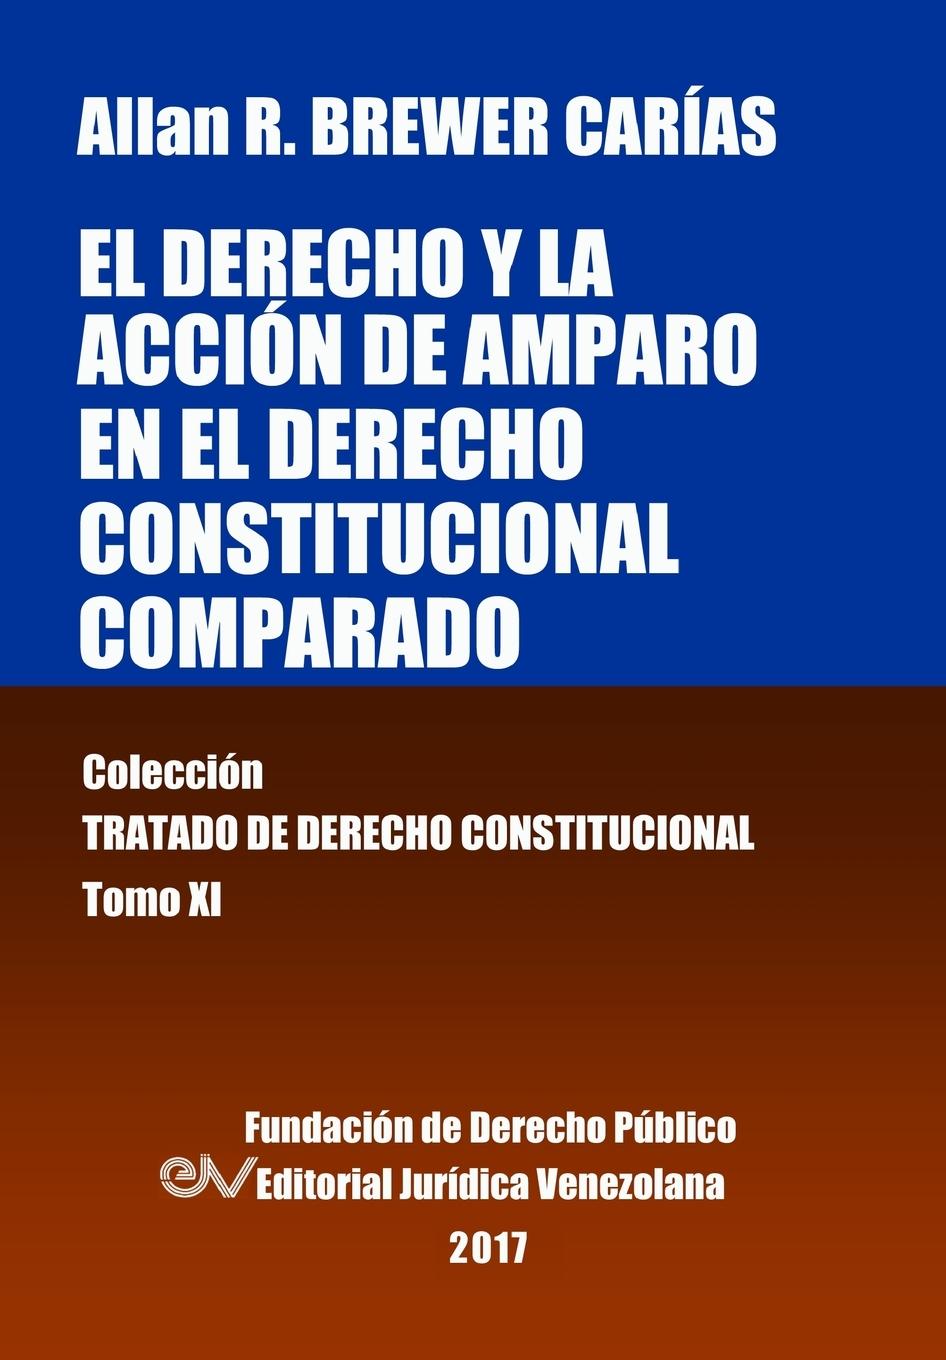 El derecho y la acción de amparo en el derecho constitucional comparado. Tomo XI. Colección Tratado de Derecho Constitucional - Brewer-Carias, Allan R.